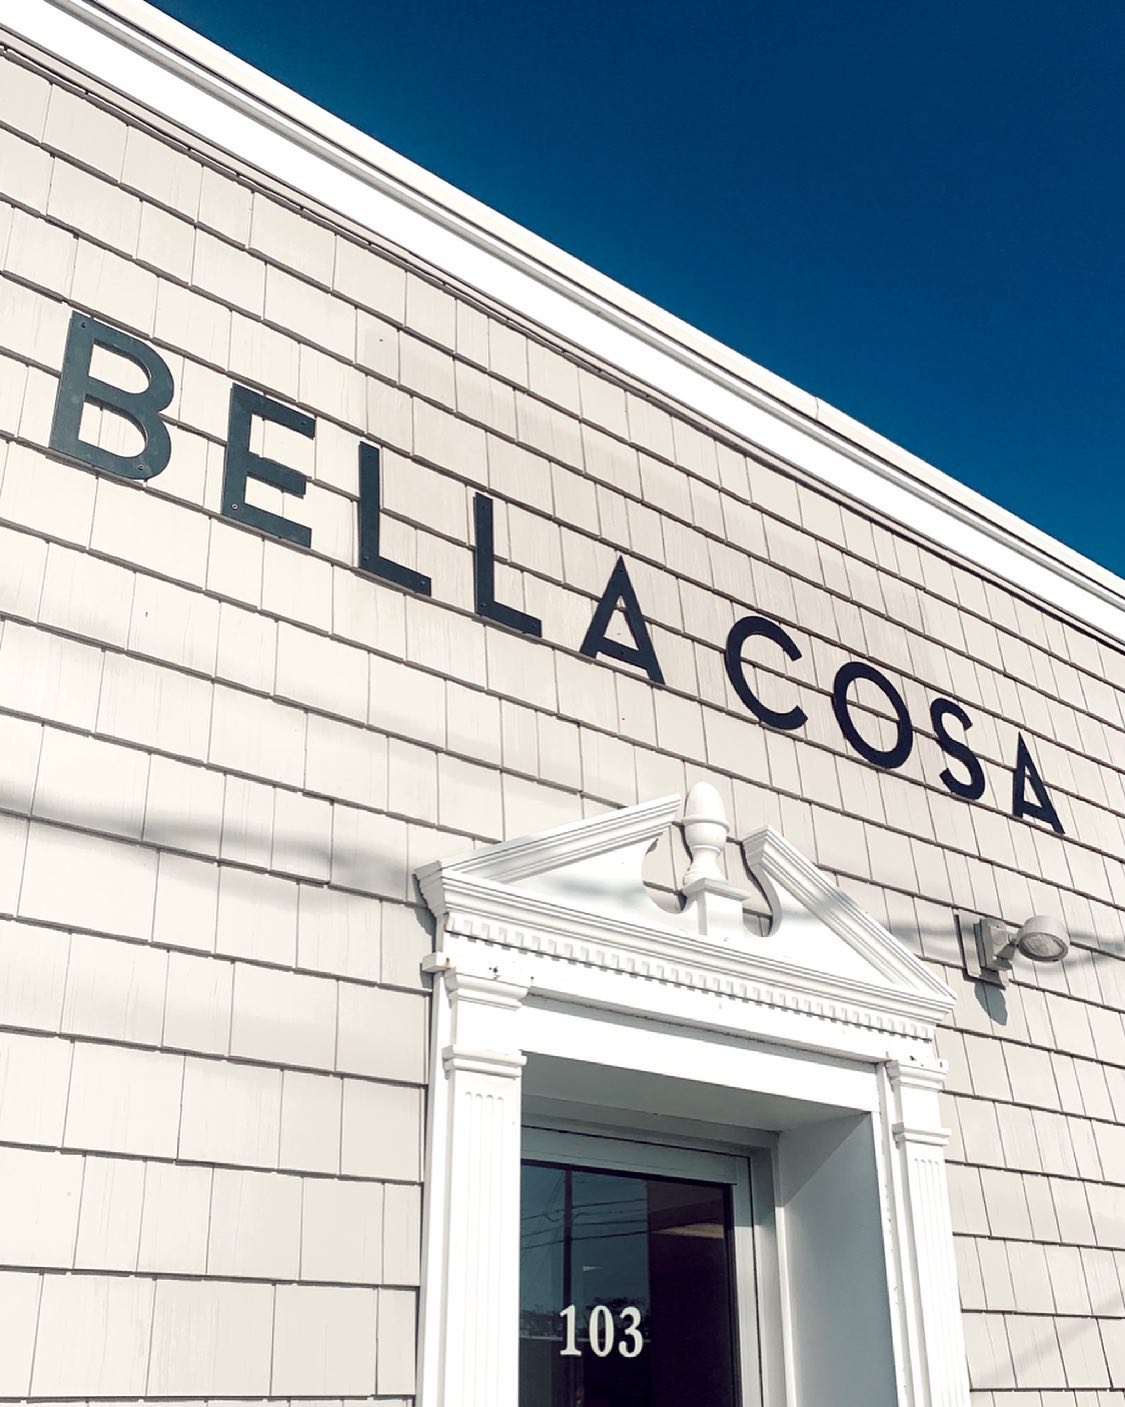 Bella Cosa Salon and Spa